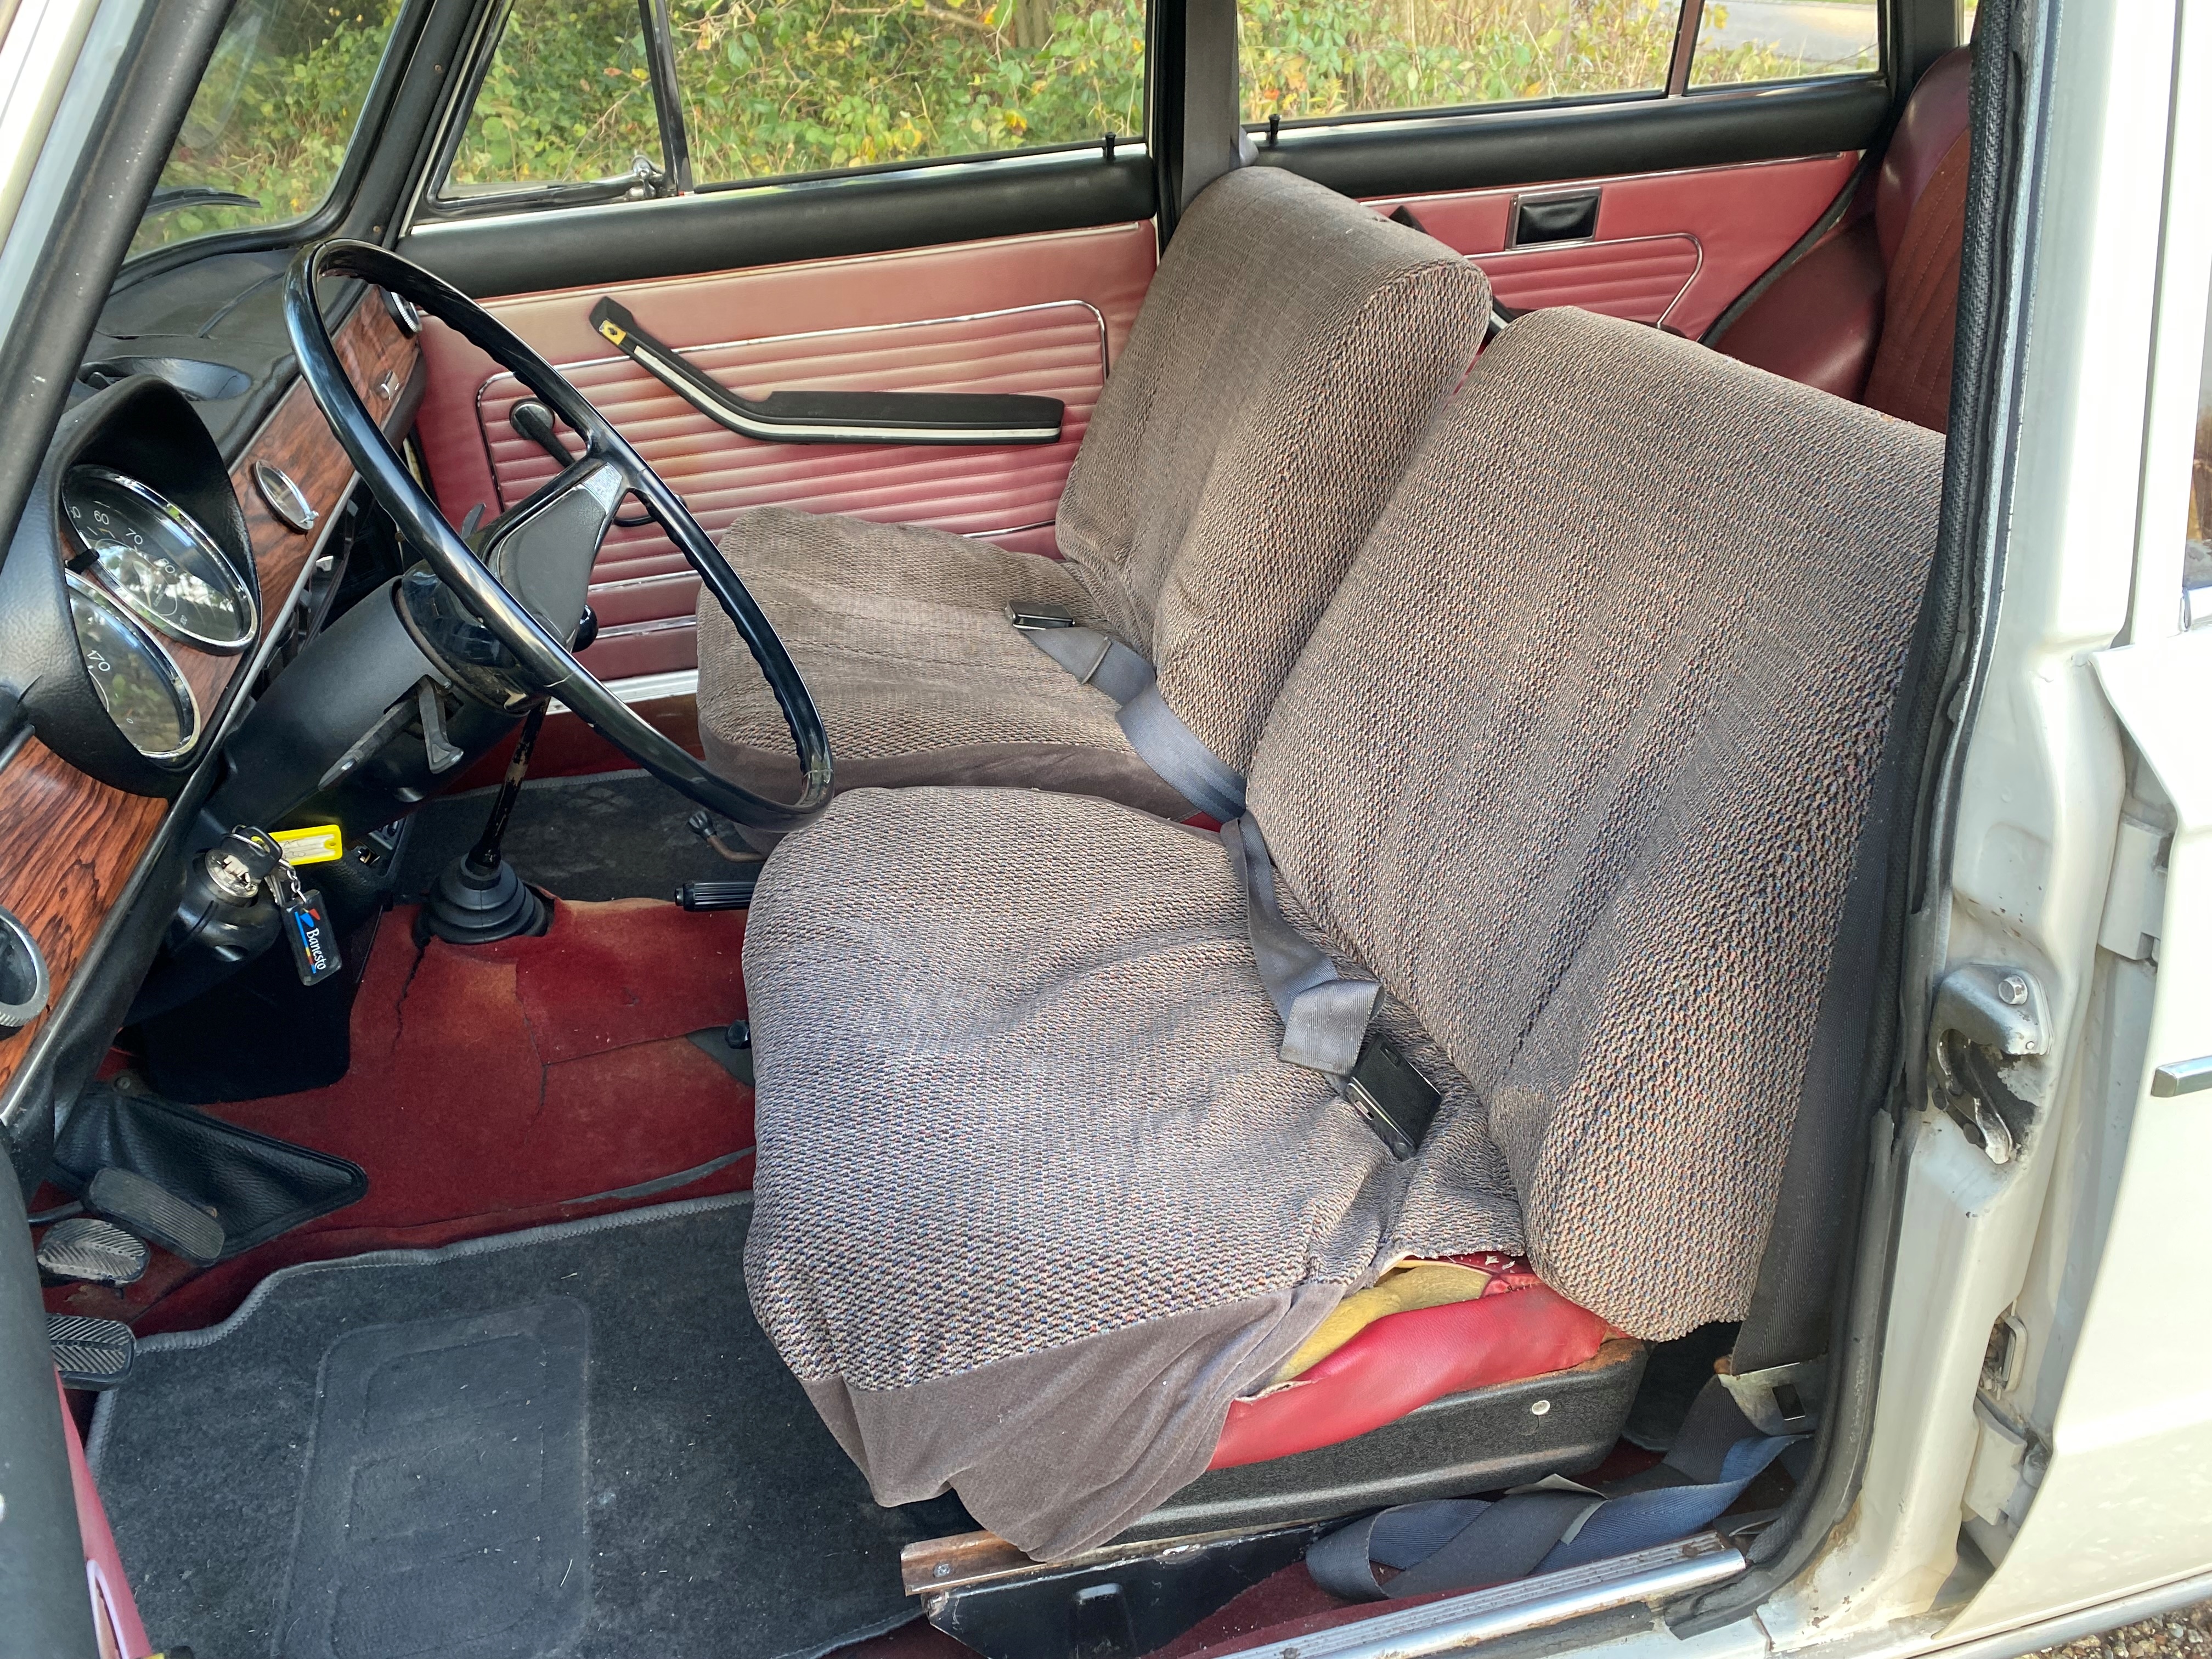 1972 Seat 1430 Familiar oldtimer te koop